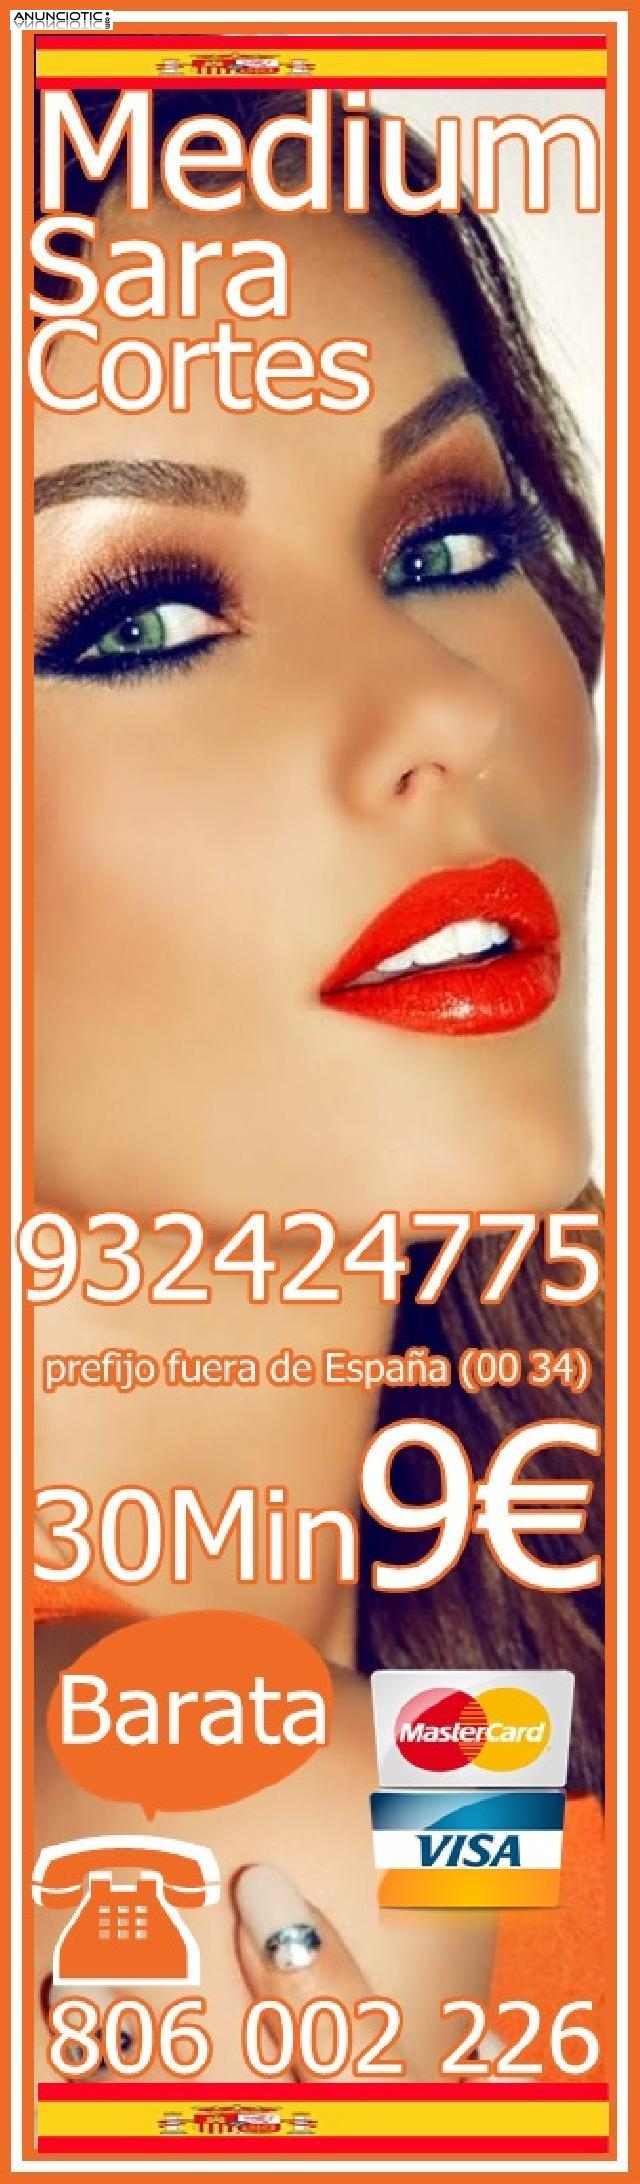 Respuestas Claras y Sinceras 932424775 VISA 4 EUR/15M De España llamar aqui